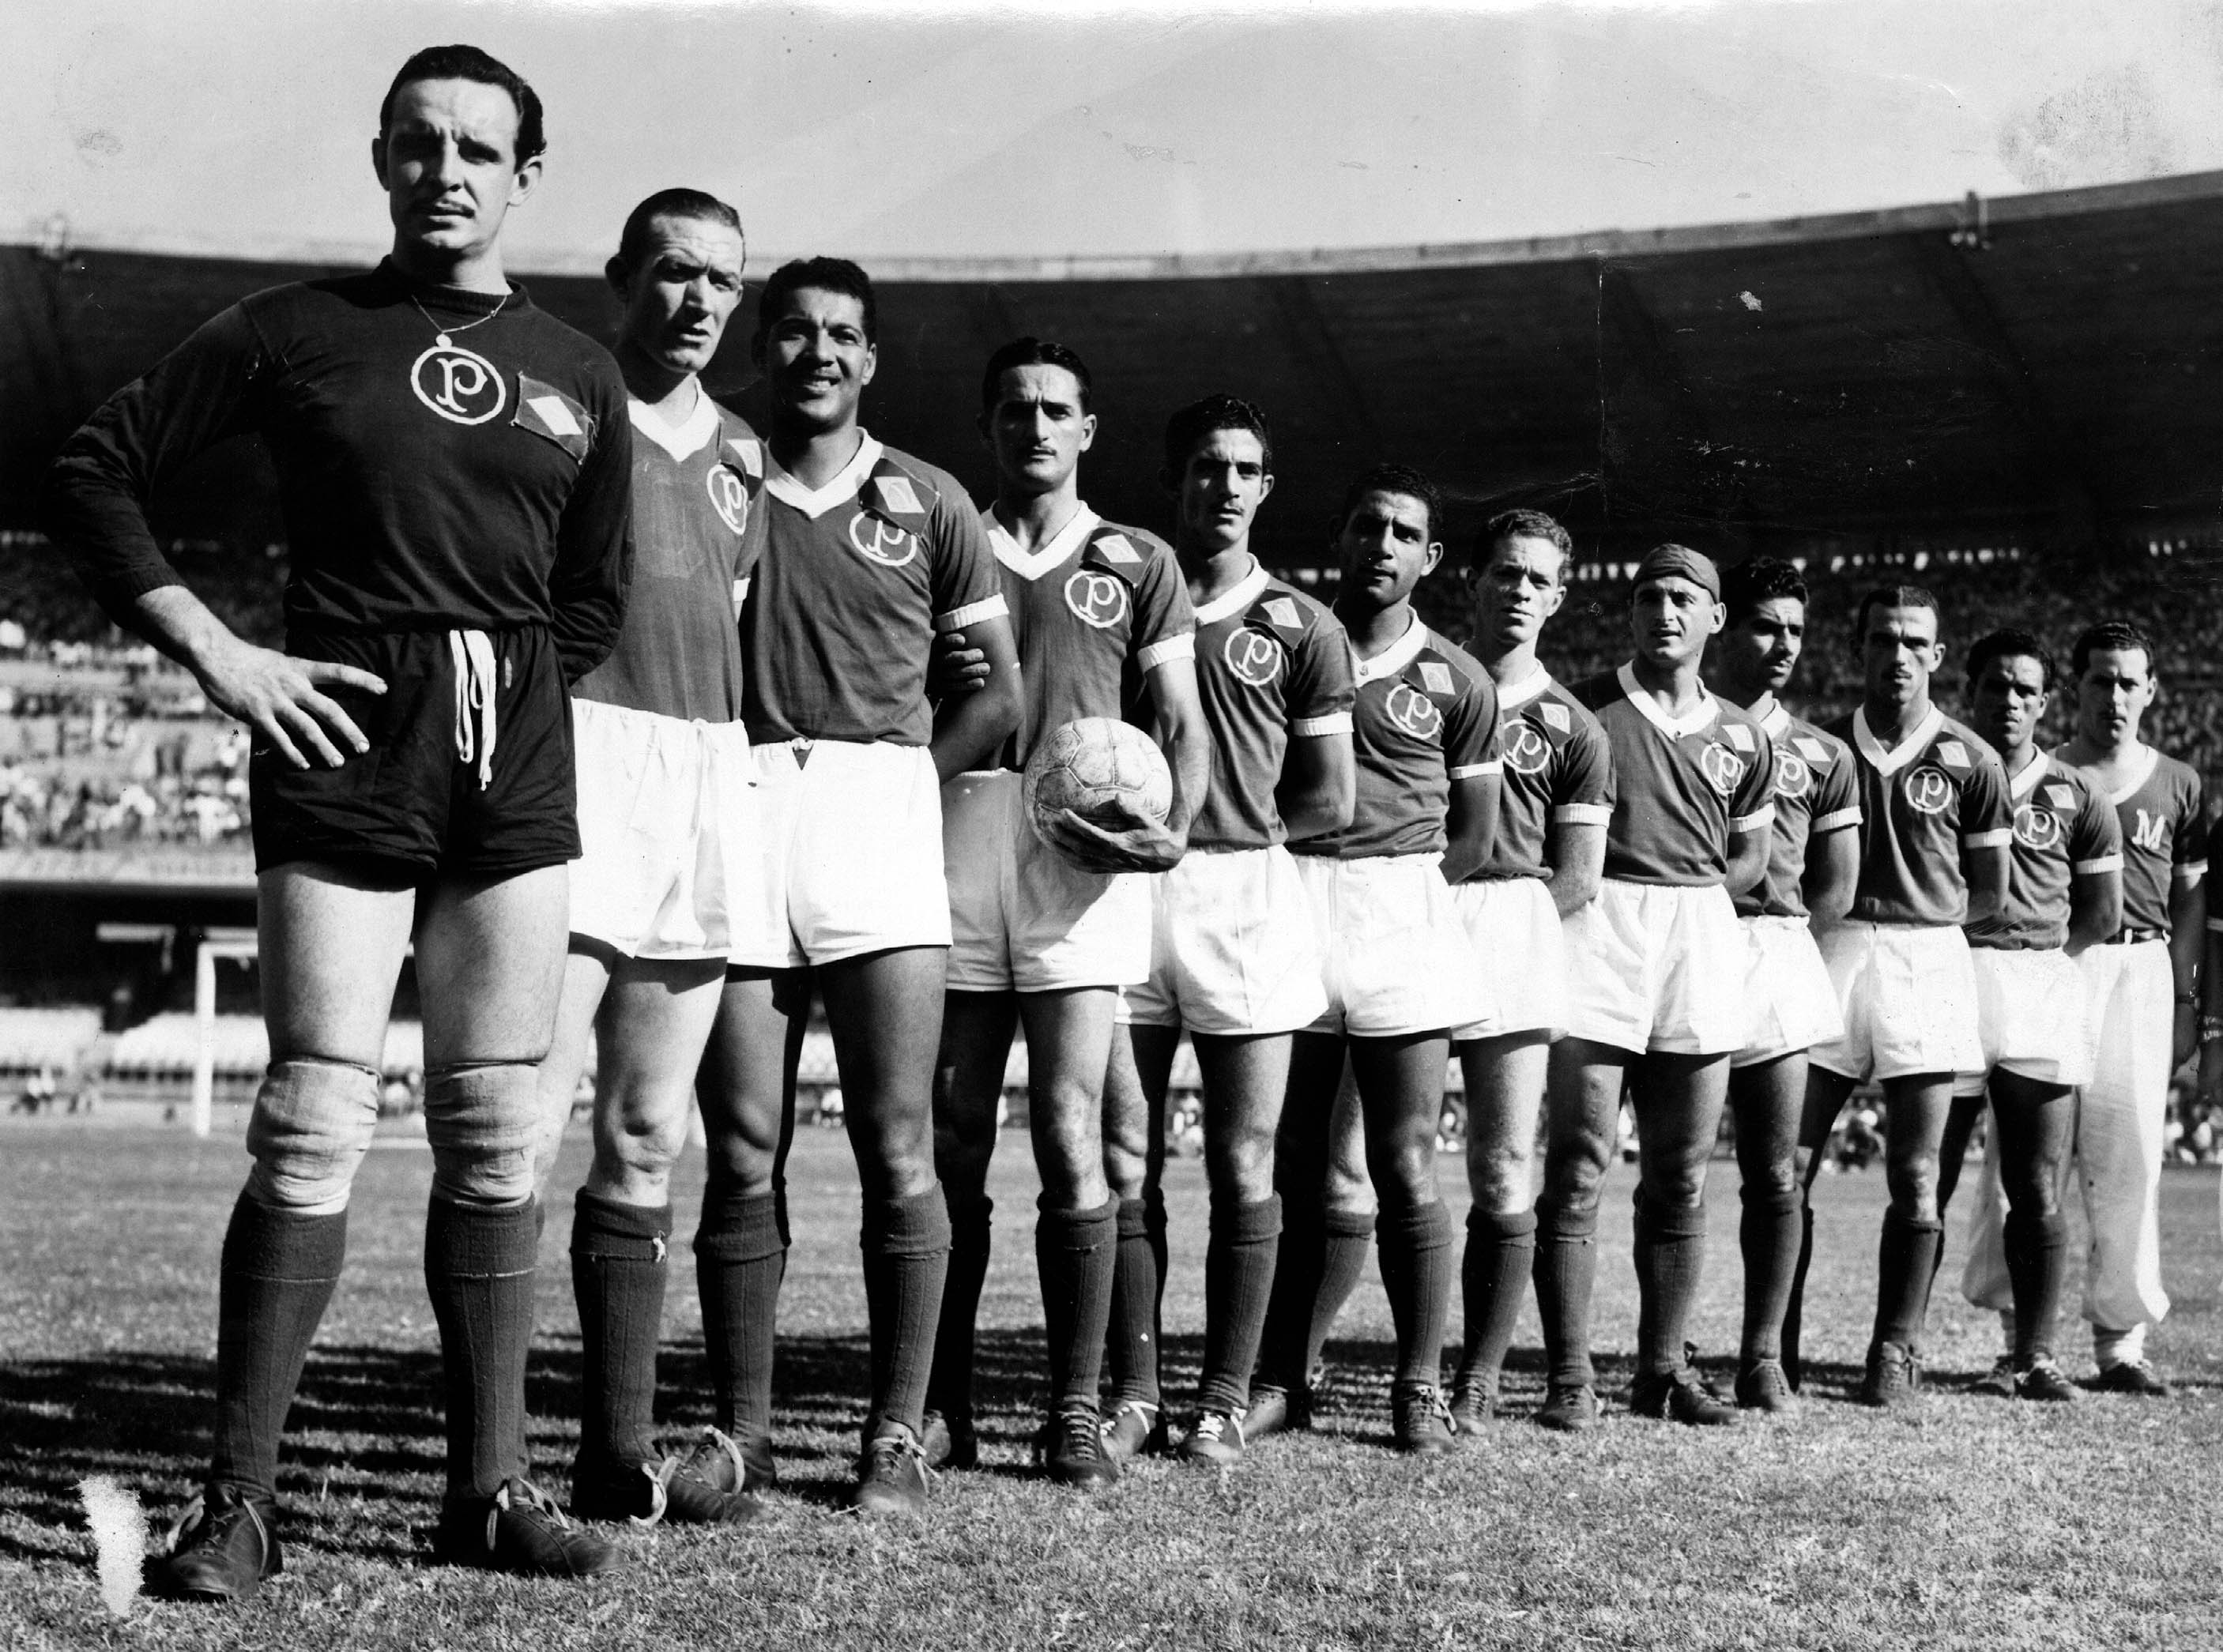 Palmeiras tem Mundial? Como foi a Copa Rio de 1951? - Lance!